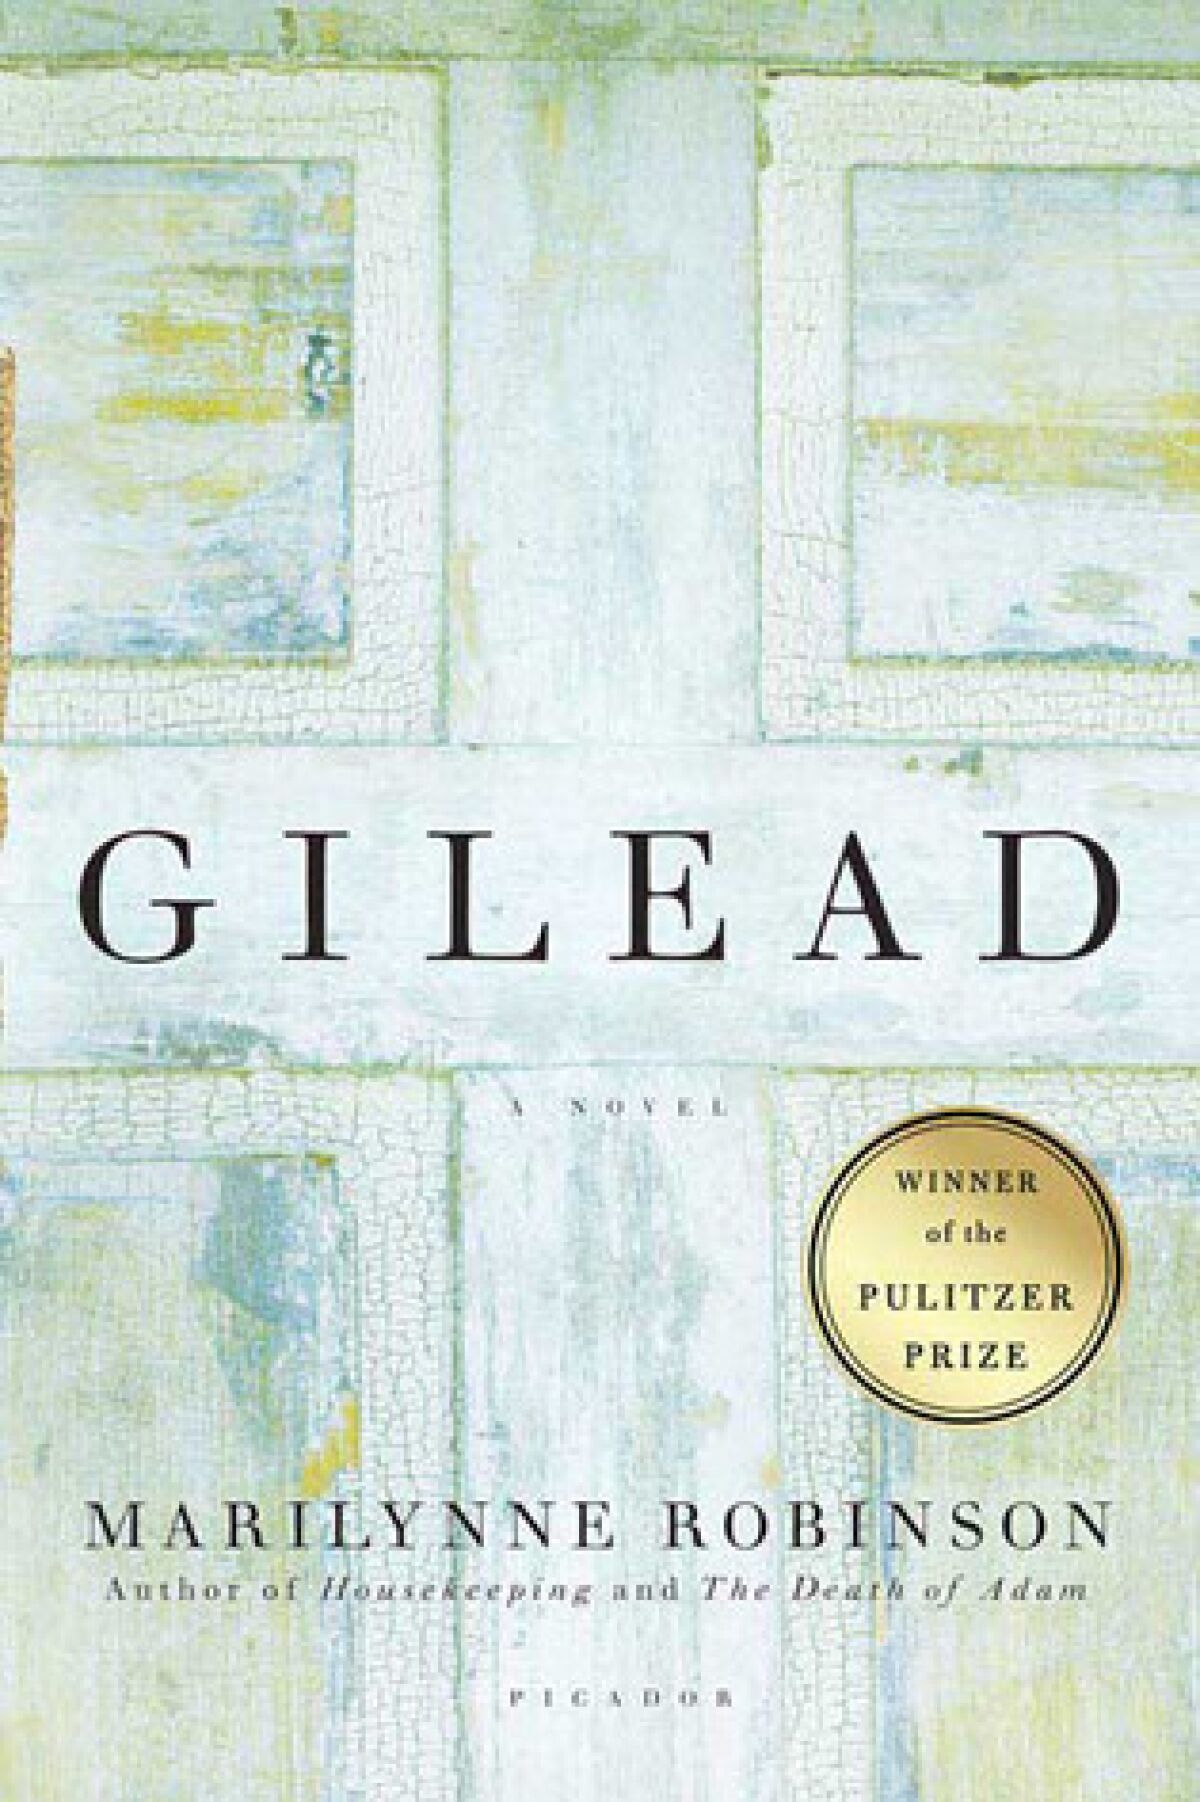 "Gilead" by Marilynne Robinson.